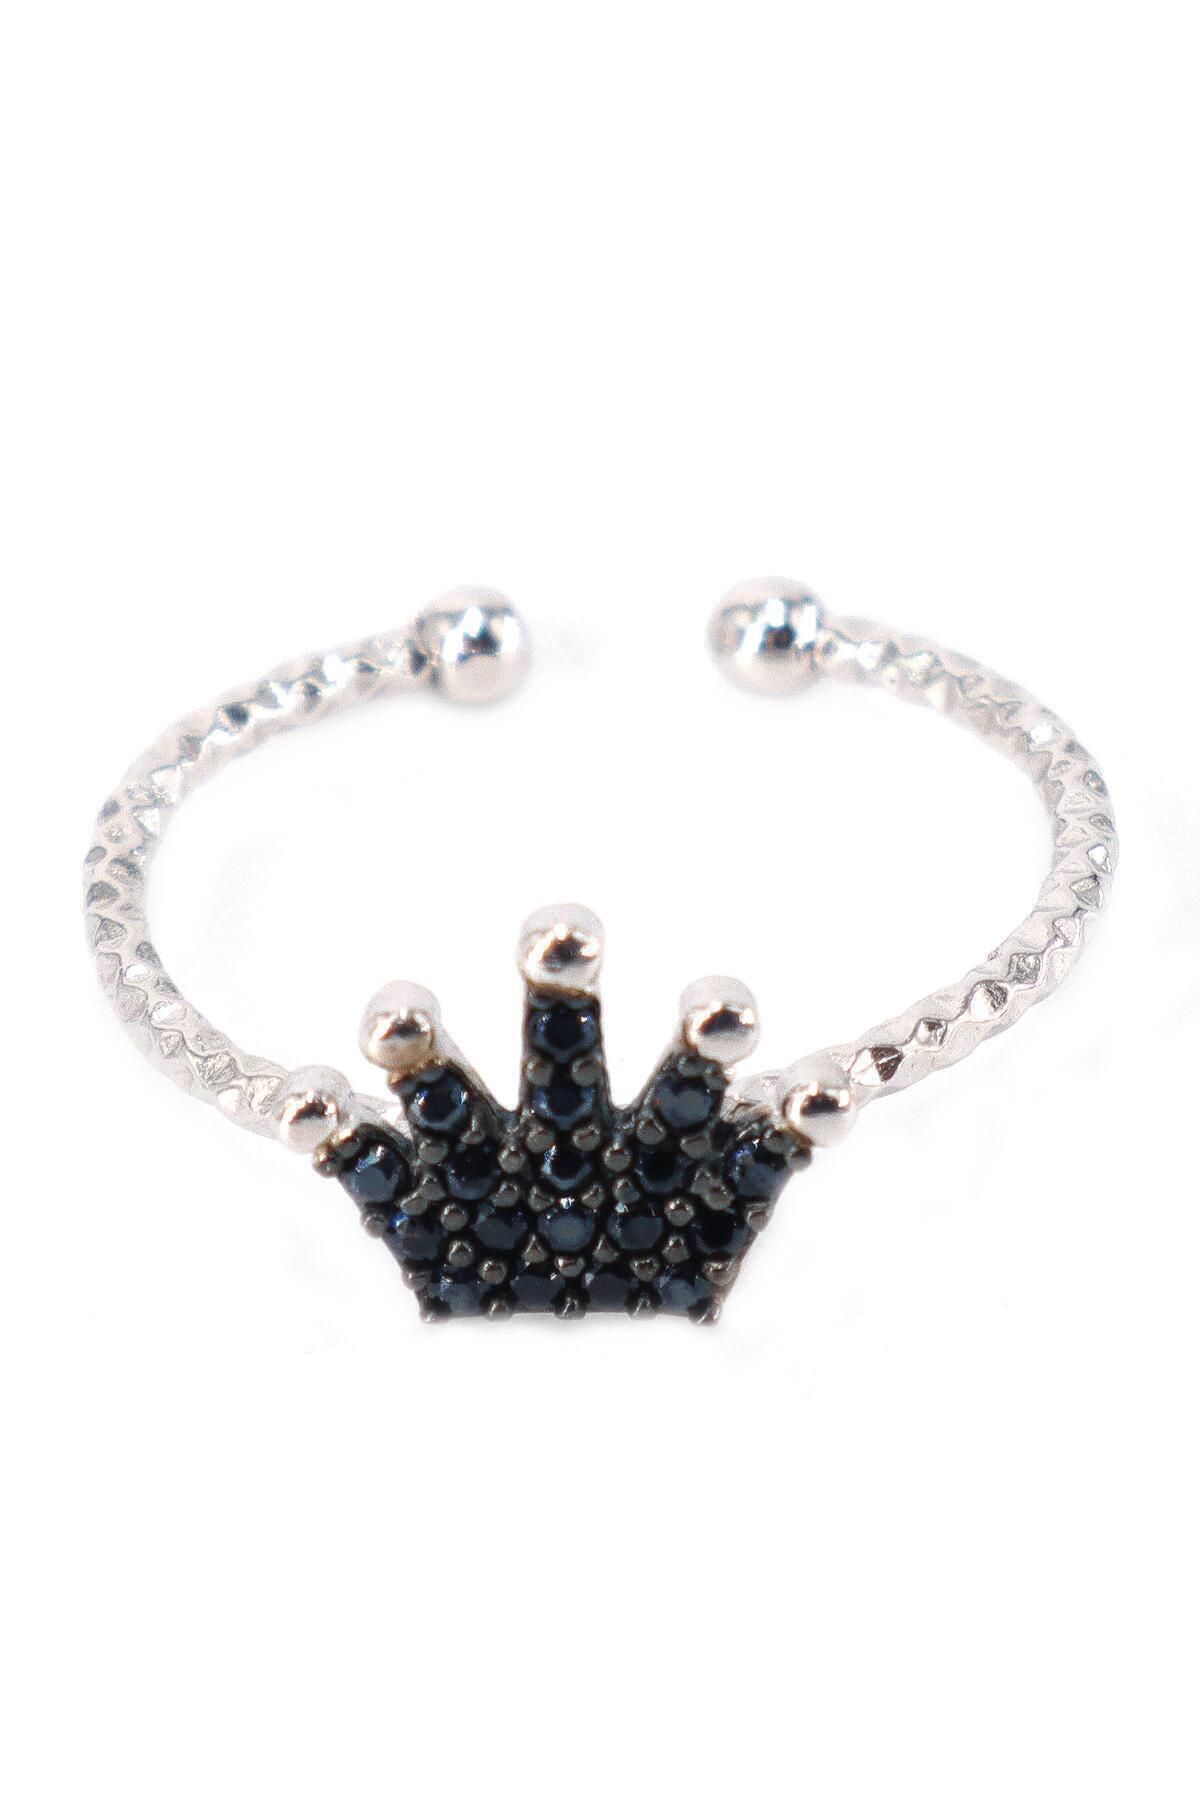 Neva Jewelry 925 Ayar Ayarlanabilir SiyahTaşlı Kraliçe Modelli Gümüş Yüzük